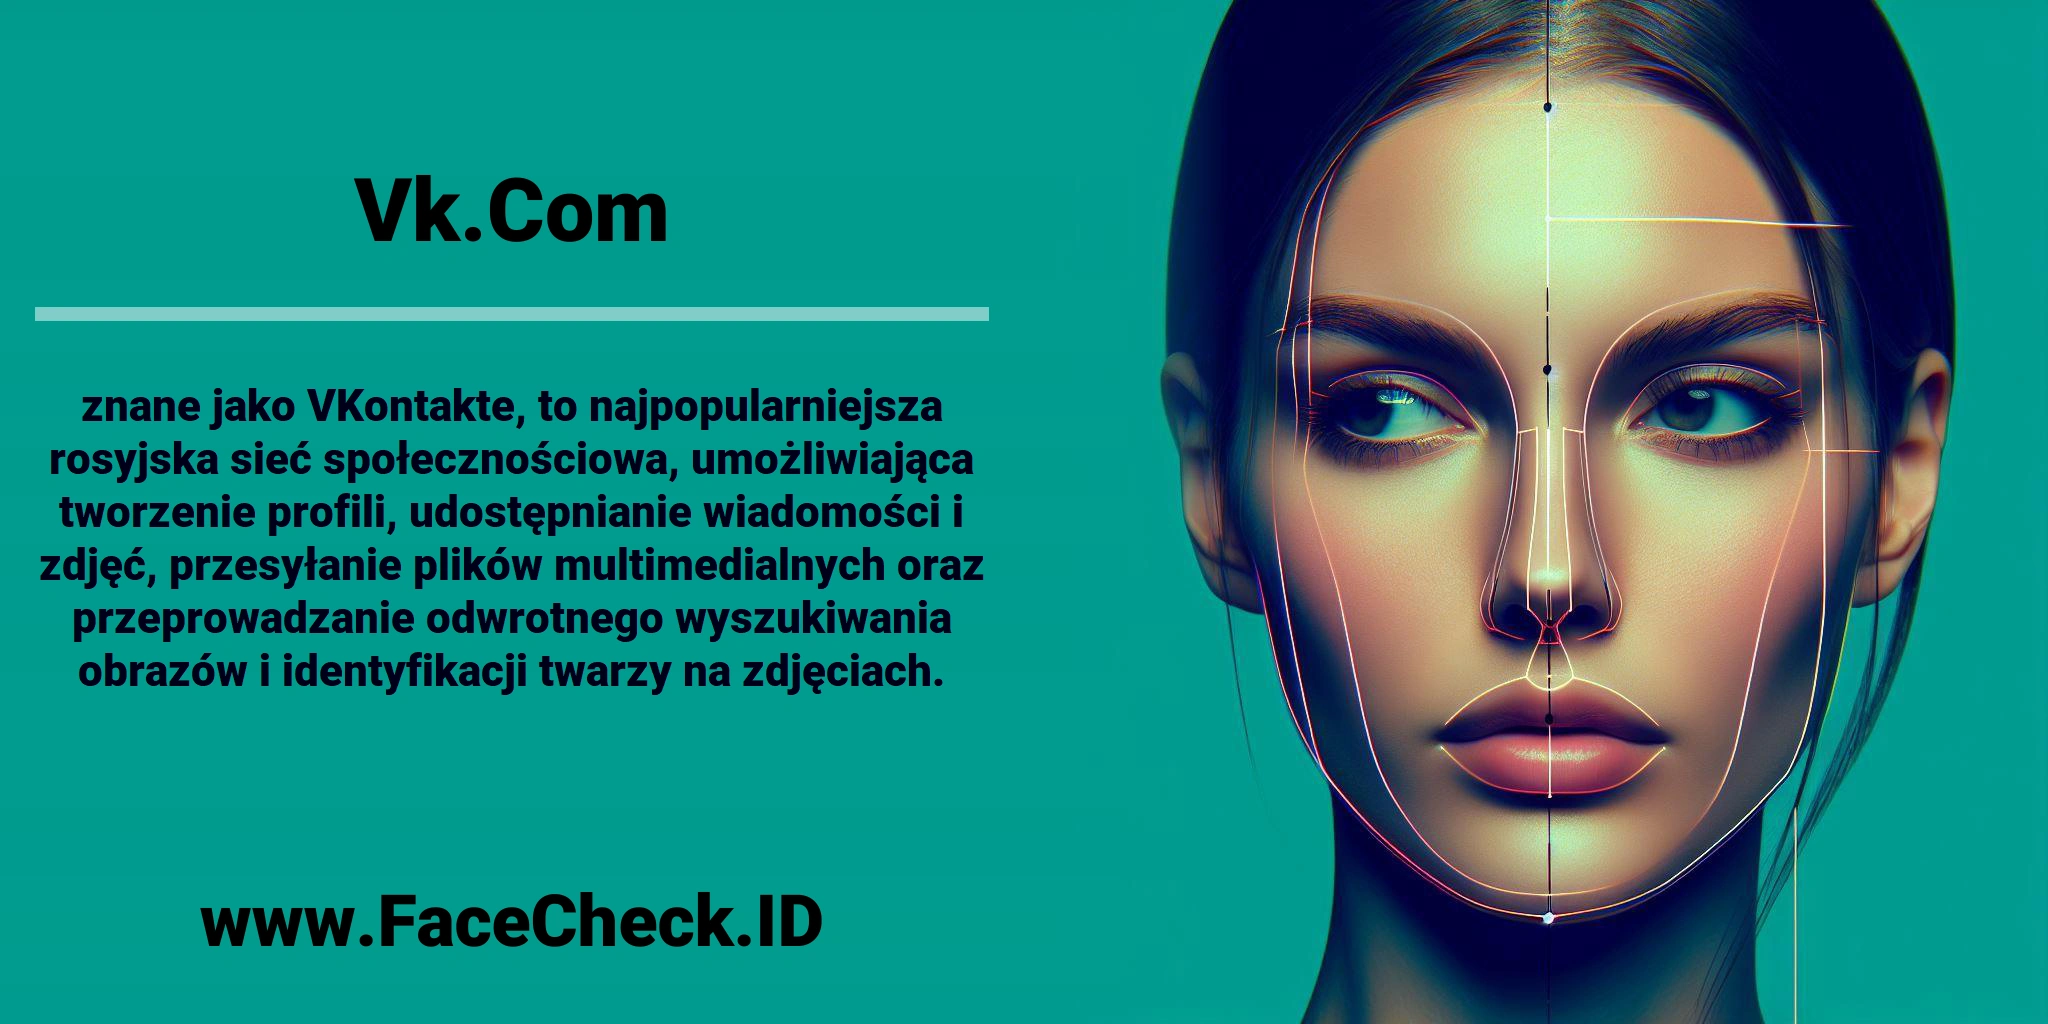 <b>Vk.Com</b> znane jako VKontakte, to najpopularniejsza rosyjska sieć społecznościowa, umożliwiająca tworzenie profili, udostępnianie wiadomości i zdjęć, przesyłanie plików multimedialnych oraz przeprowadzanie odwrotnego wyszukiwania obrazów i identyfikacji twarzy na zdjęciach.
